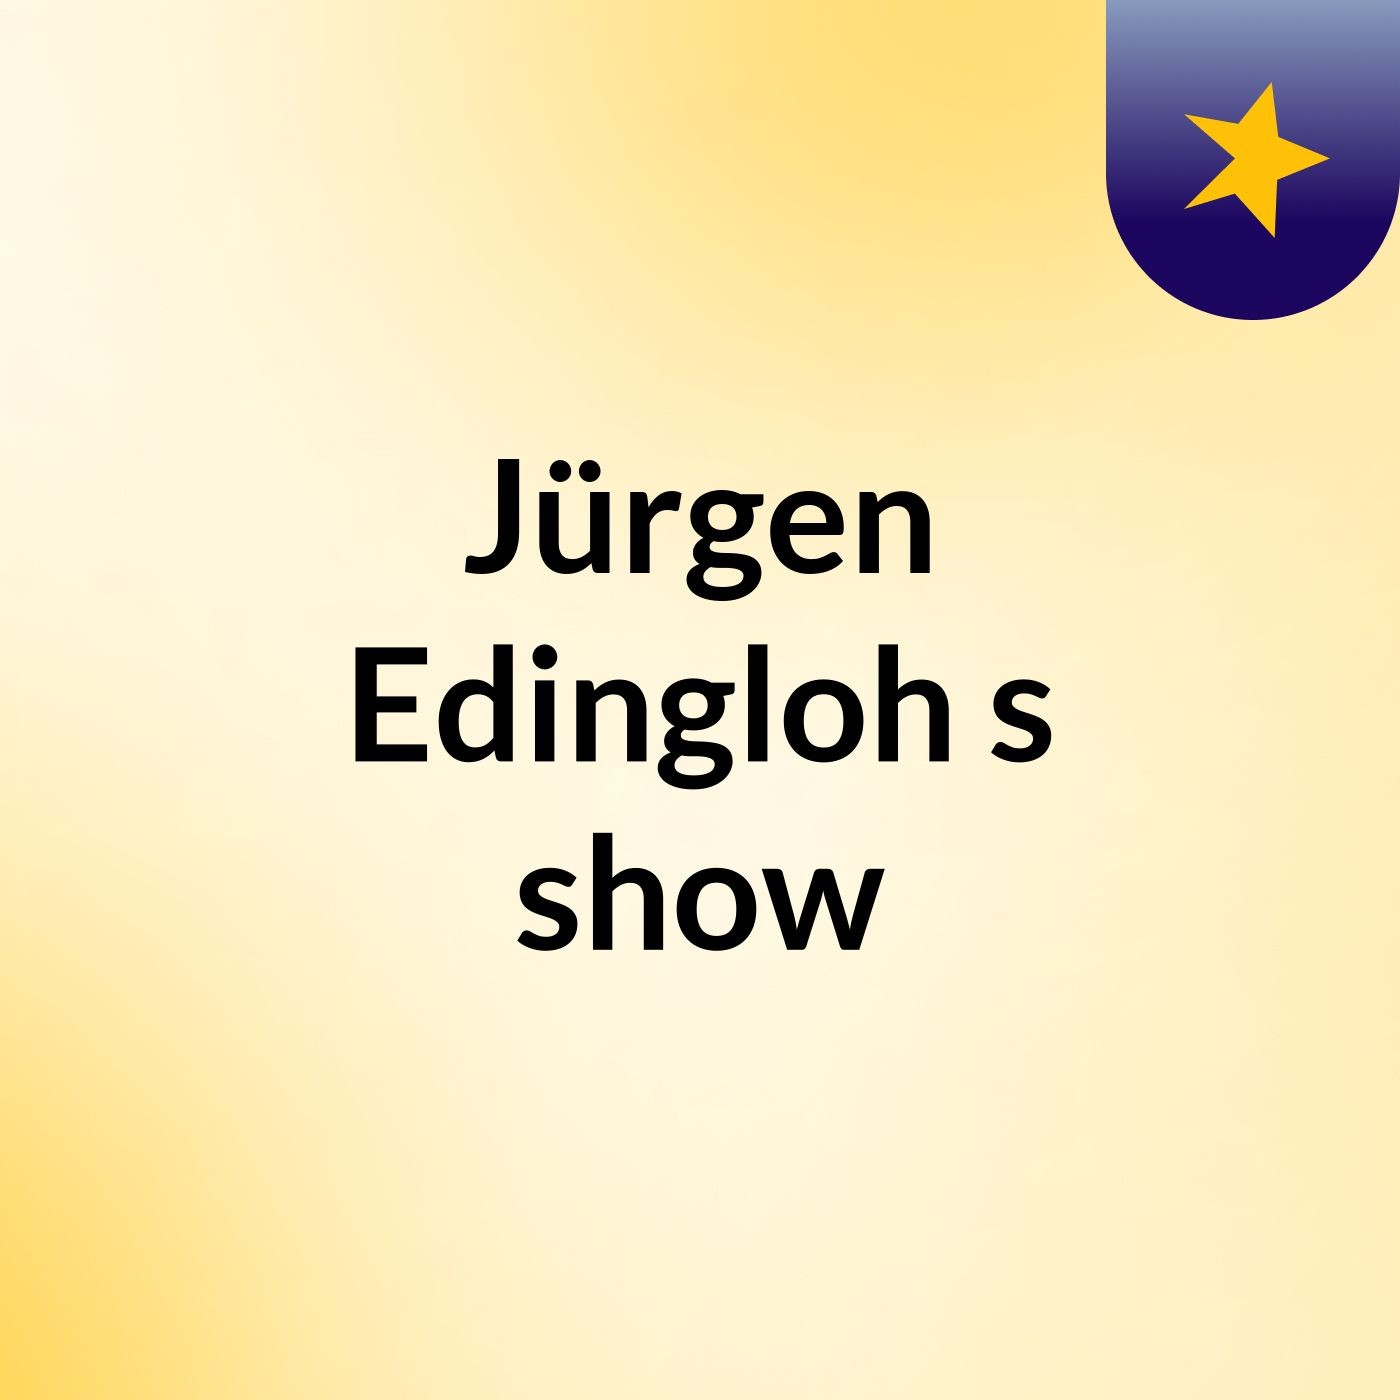 Jürgen Edingloh's show